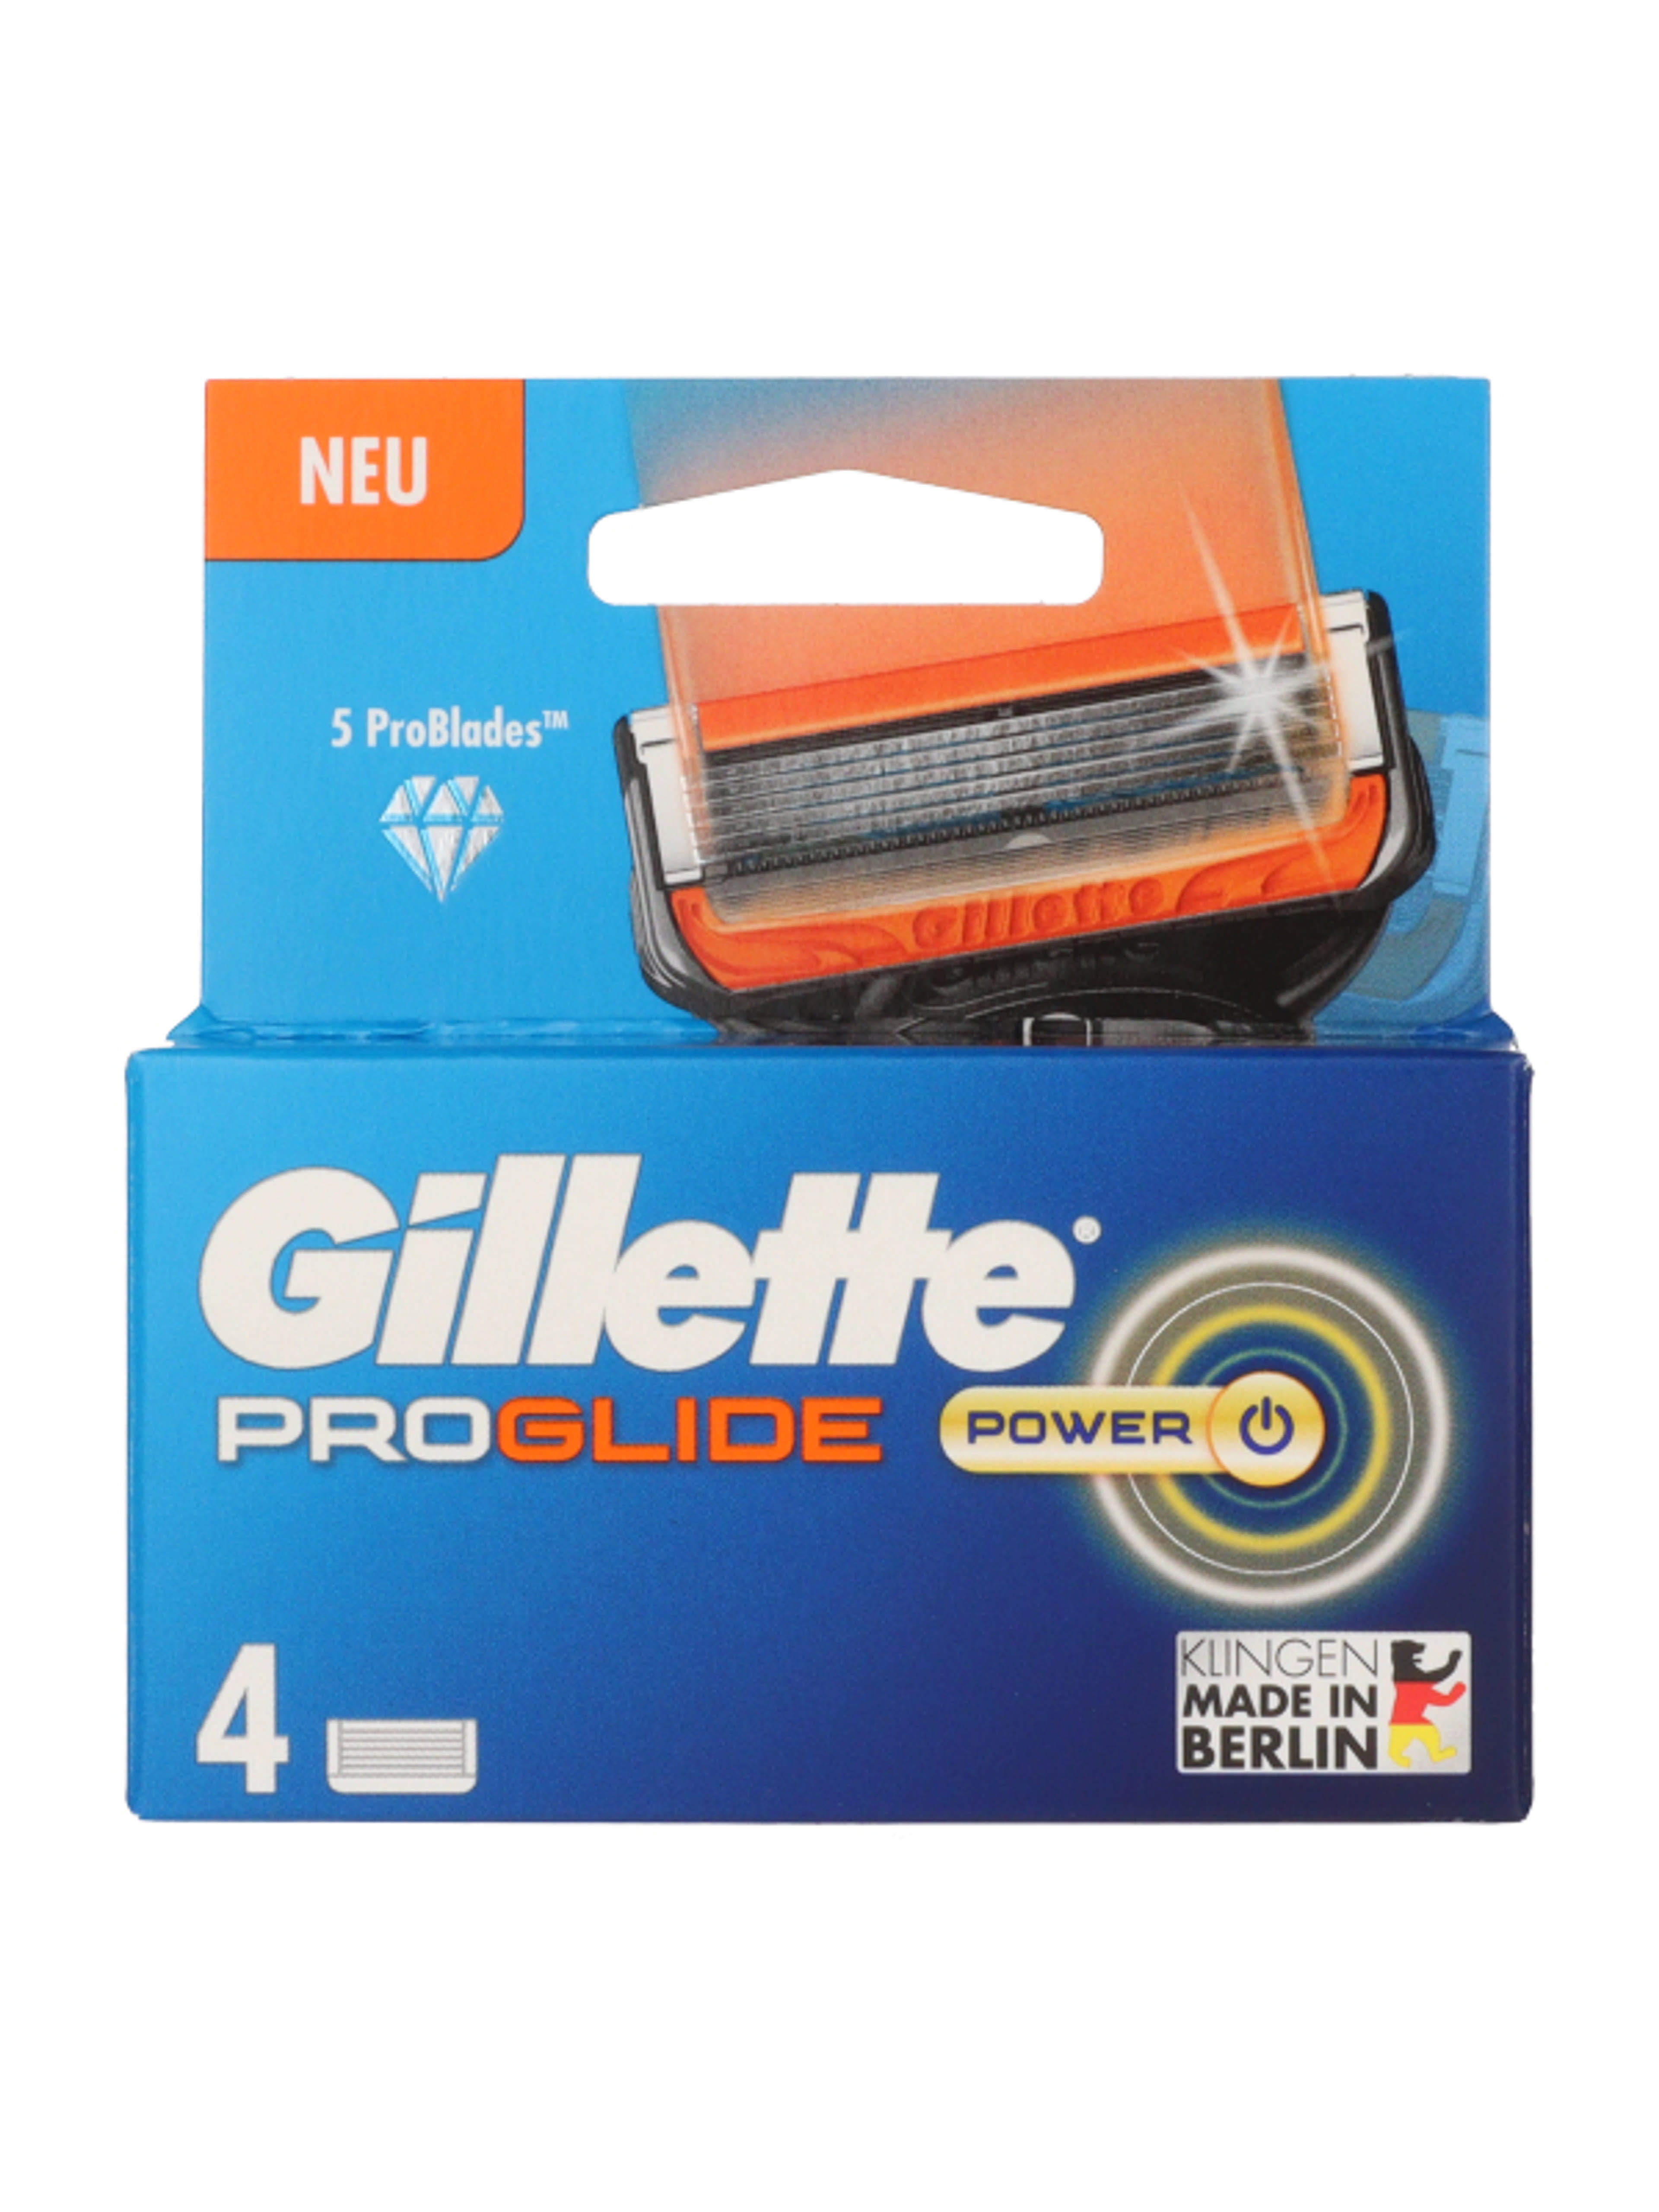 Gillette Fusion ProGlide borotvabetét 5 pengés - 4 db